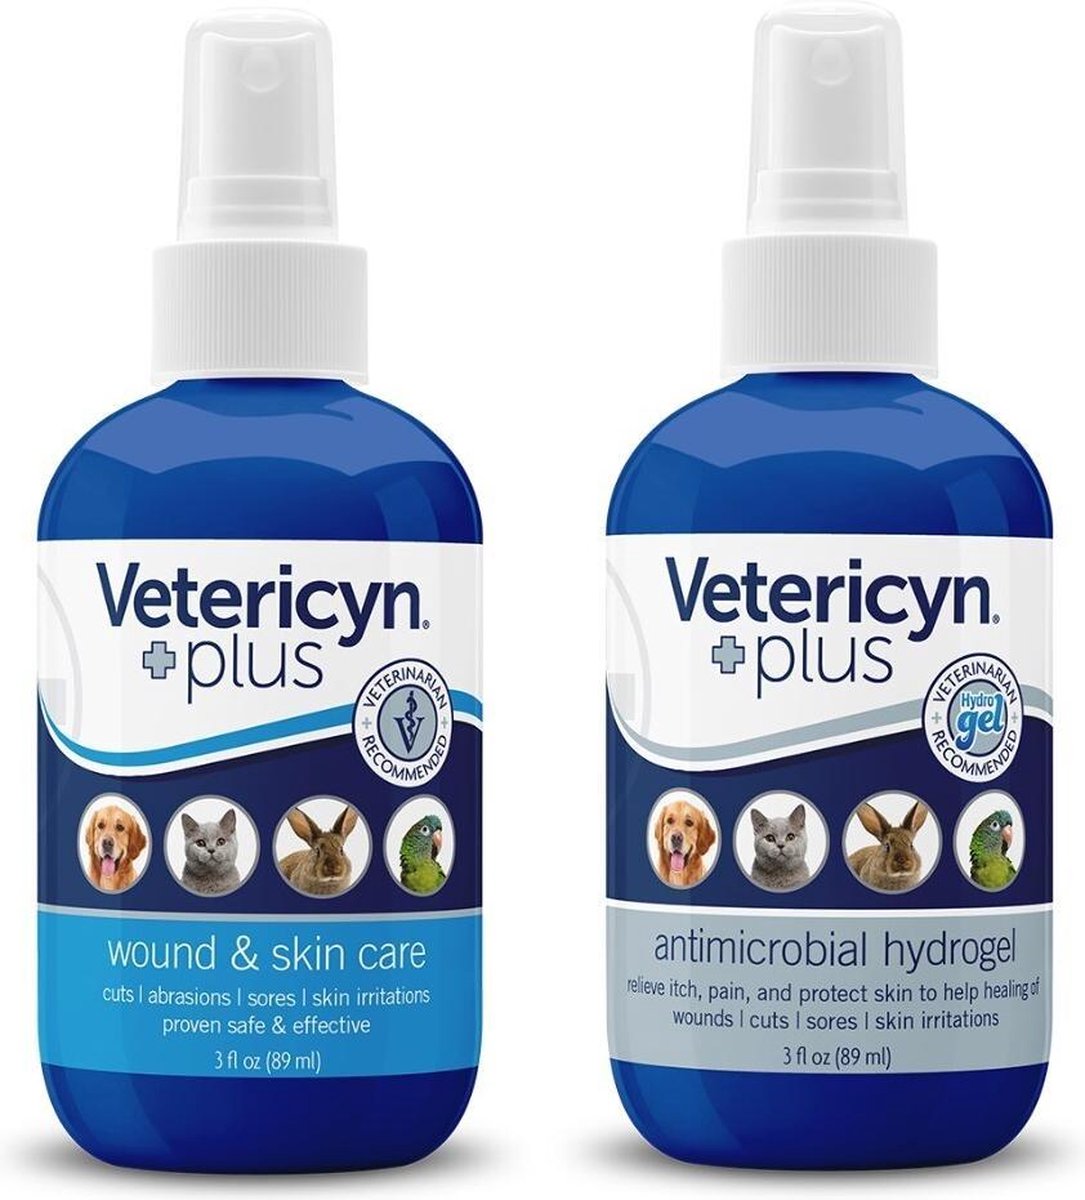 Vetericyn Plus Huisdieren Combo Sprays - 100% veilig & effectief bij wonden, jeuk, irritaties en veelvoorkomende huidproblemen. Aanbevolen door Dierenartsen. - Vetericyn